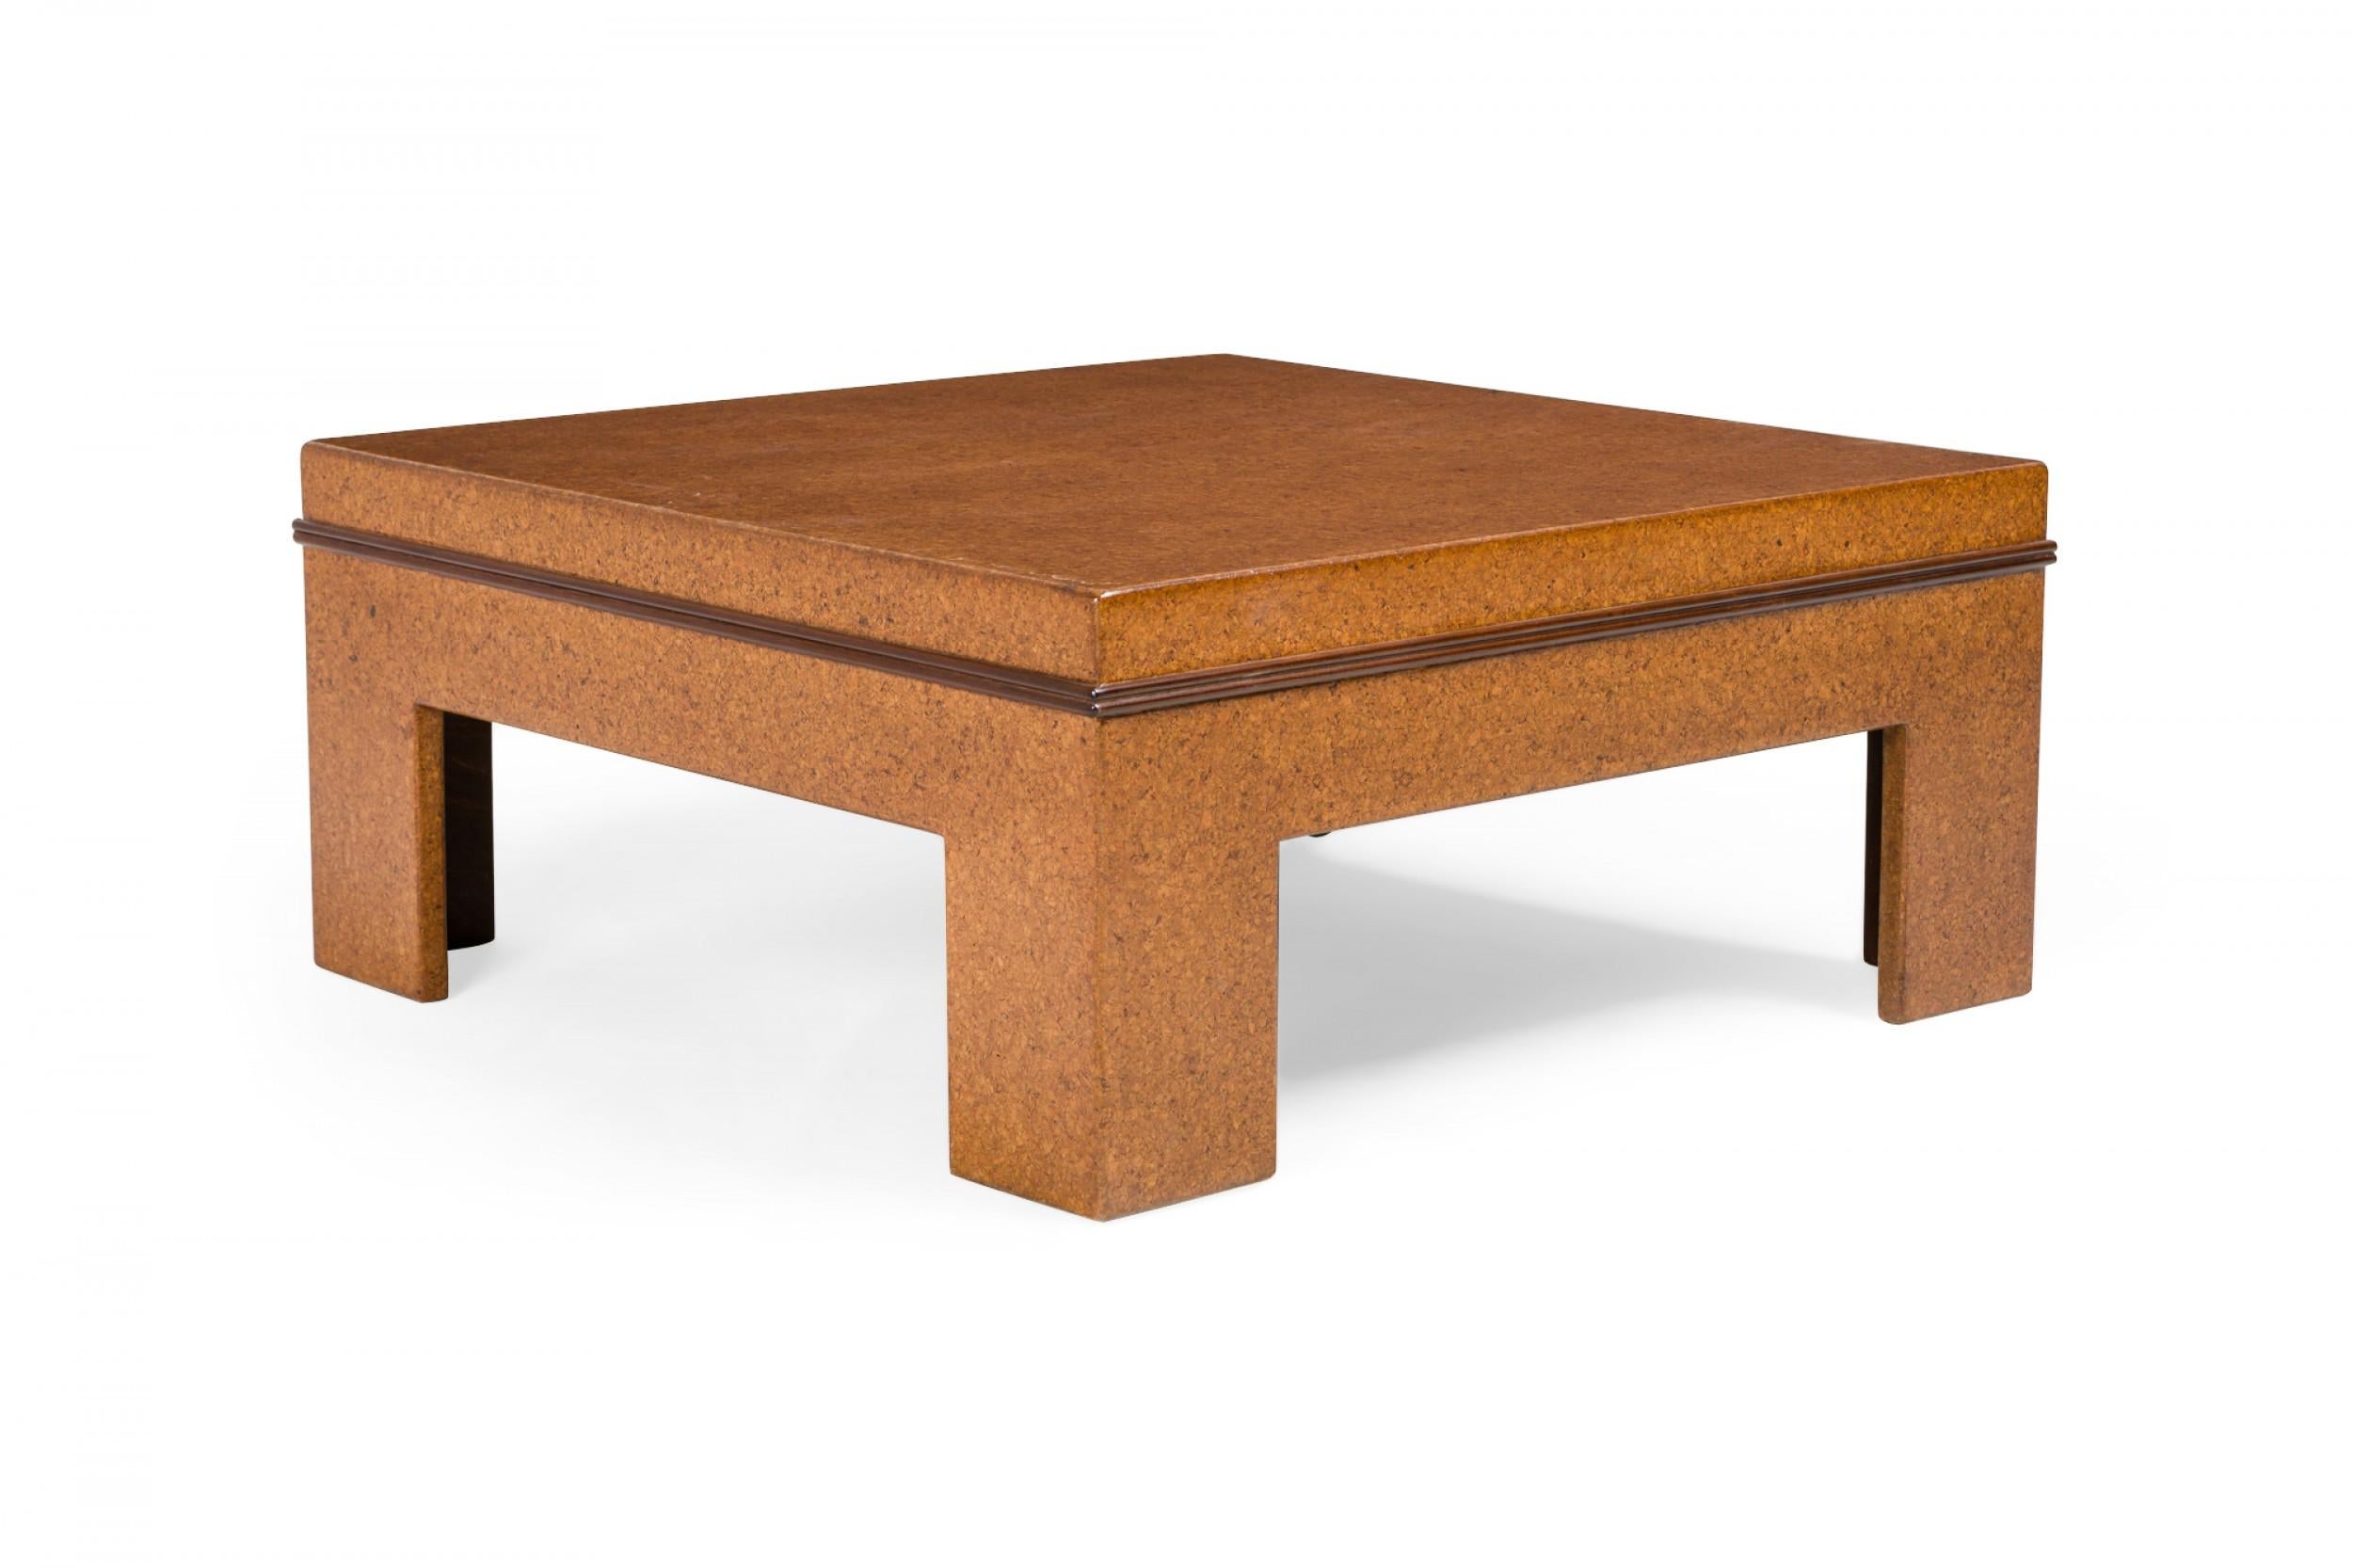 Table basse carrée américaine du milieu du siècle dernier, de style américain, avec plateau en liège et placage de liège, reposant sur quatre pieds carrés. (PAUL FRANKL).